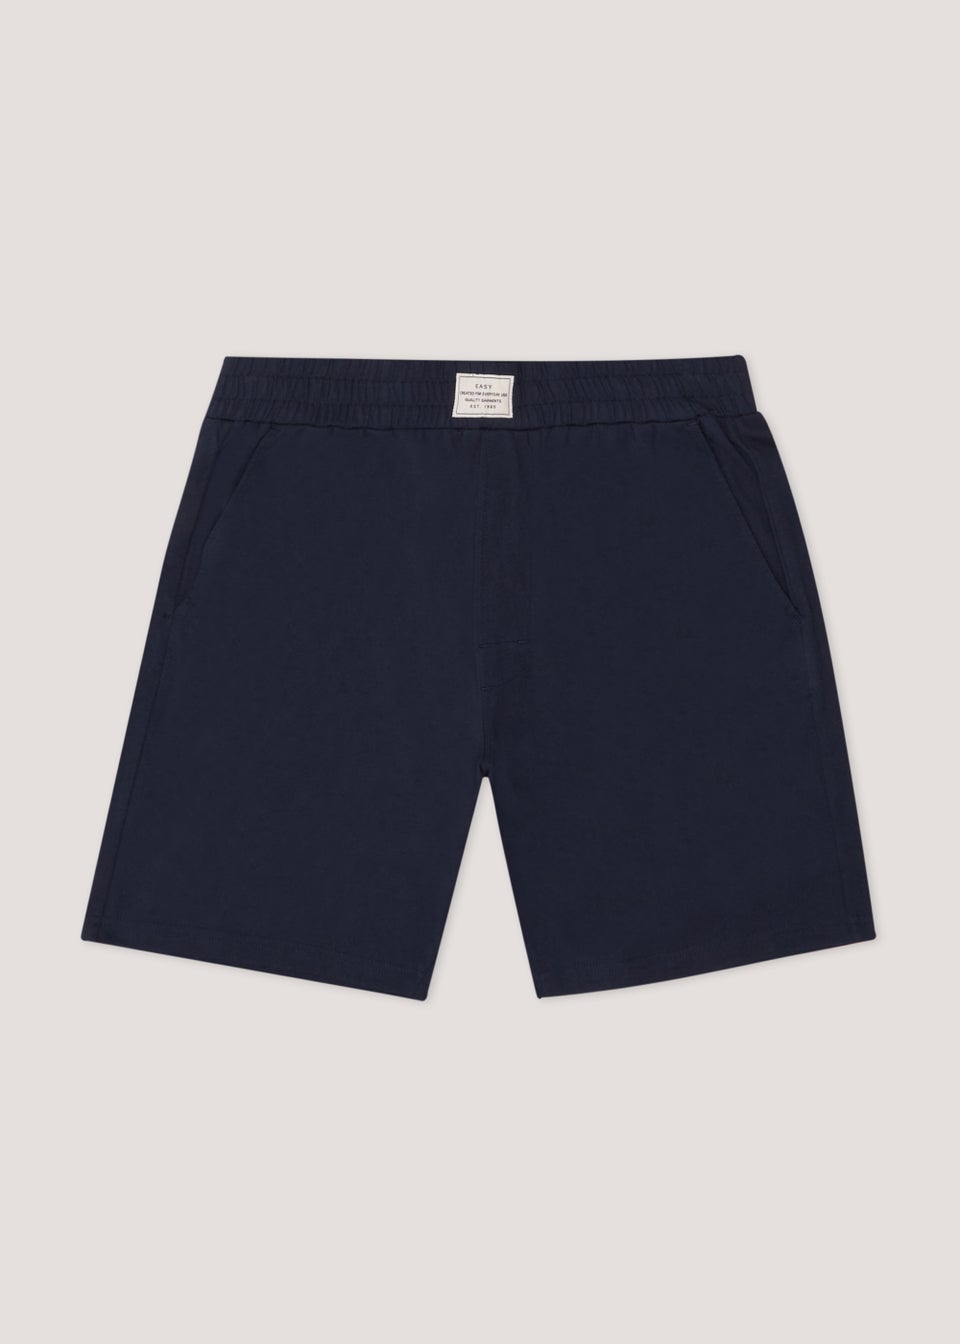 Navy Pyjama Boxer Shorts - Matalan